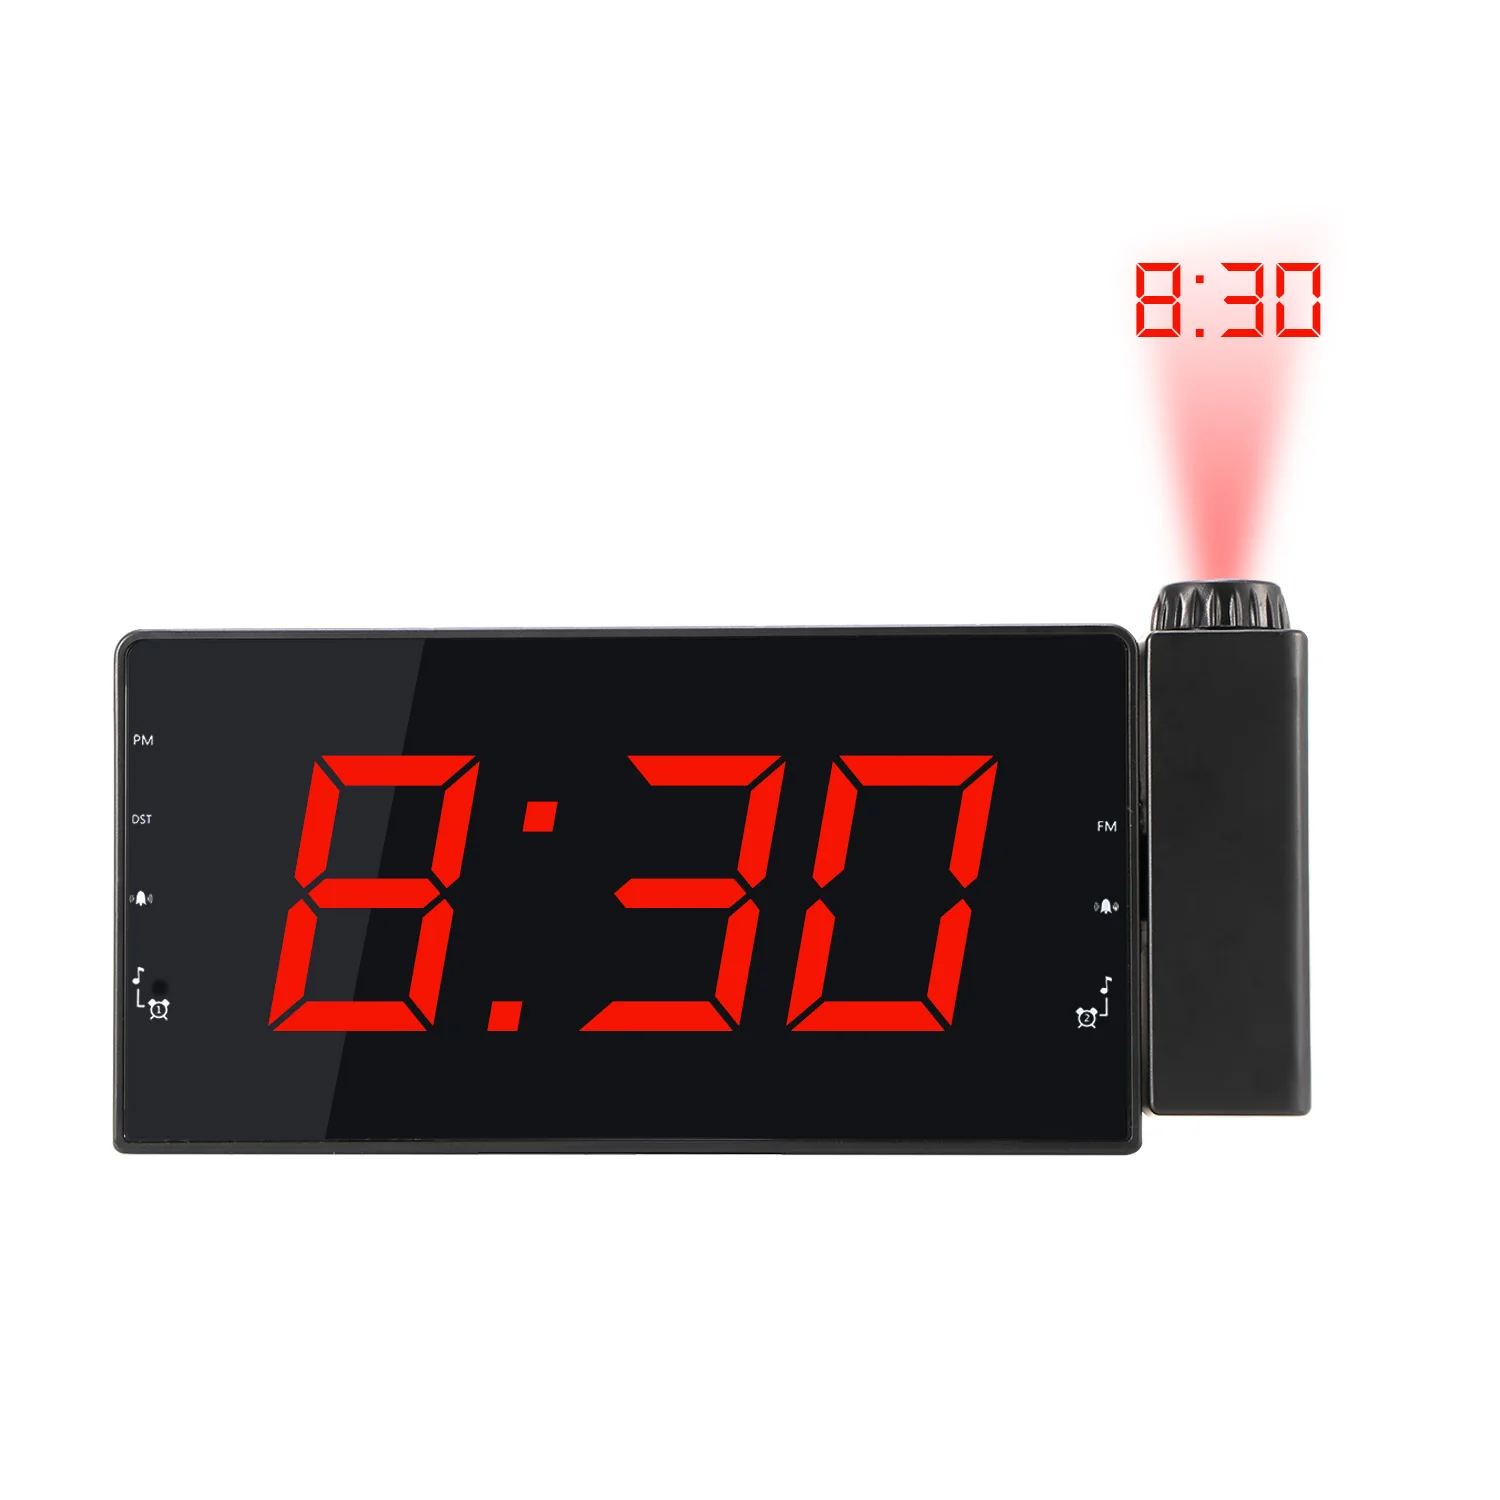 Цифровой будильник проекционные часы со временем температура проекция тройной Будильник FM радио 3 диммеры Настройка повтора таймер сна